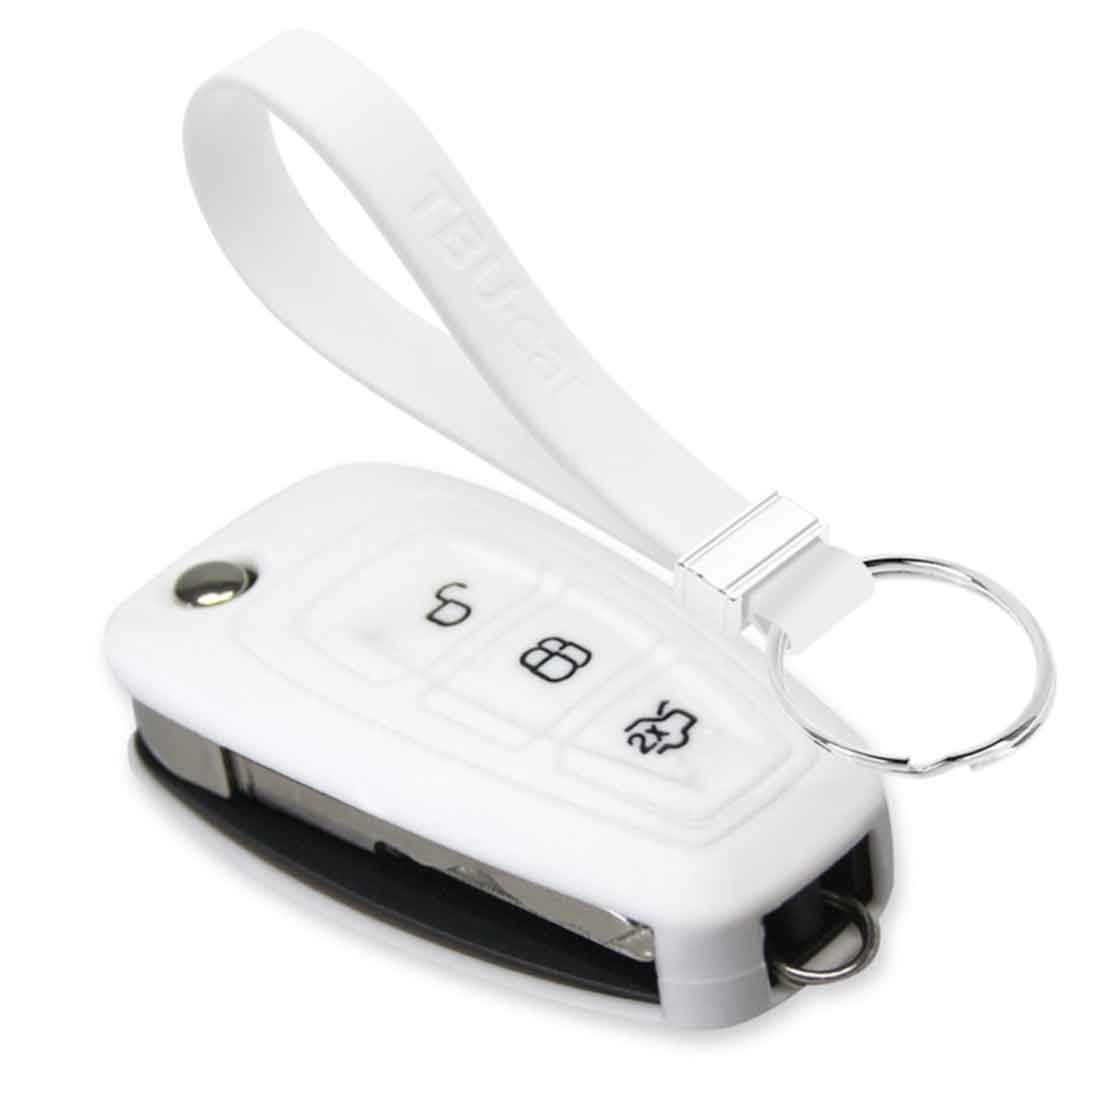 TBU car TBU car Autoschlüssel Hülle kompatibel mit Ford 3 Tasten - Schutzhülle aus Silikon - Auto Schlüsselhülle Cover in Weiß